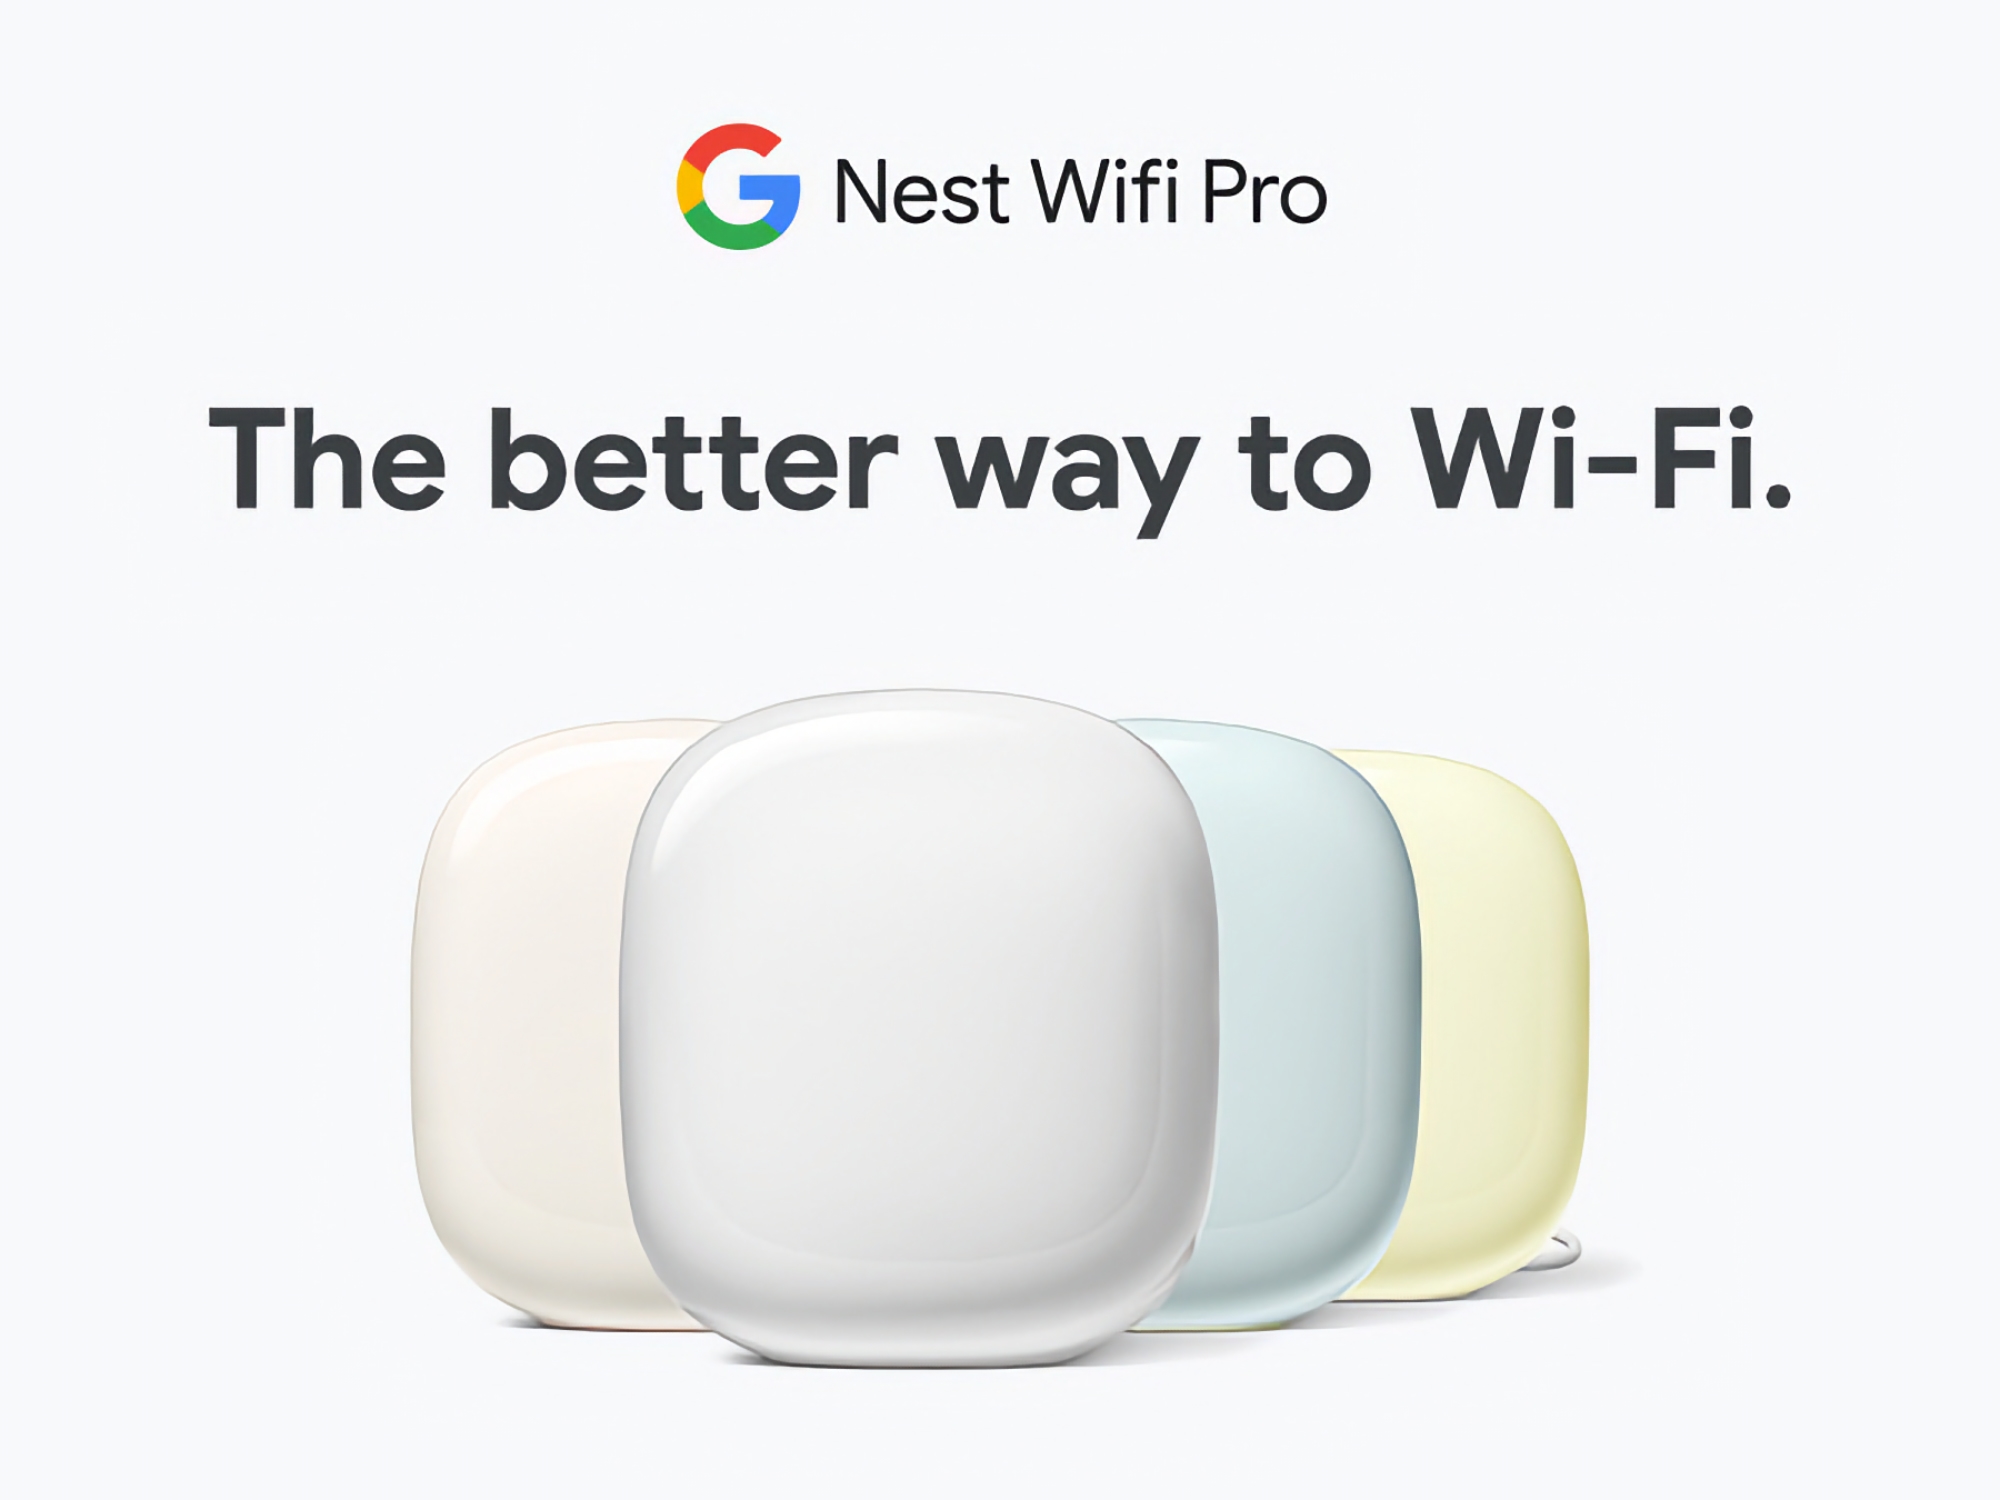 Domowy router Google Nest WiFi Pro z obsługą Wi-Fi 6E jest dostępny na Amazon ze zniżką do 80 USD